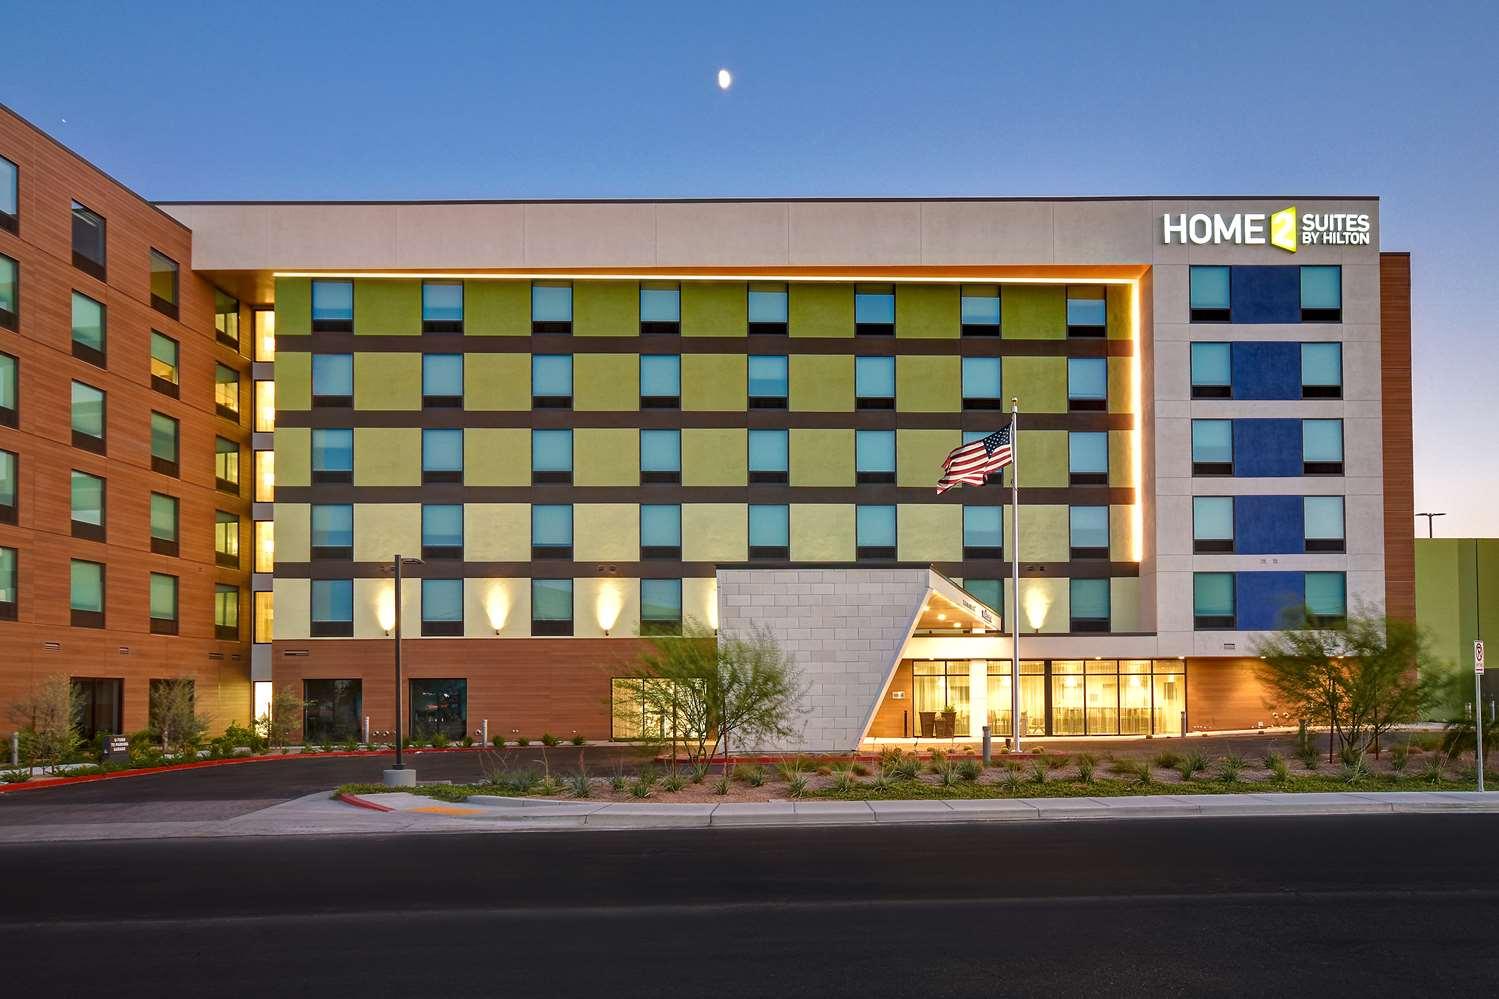 Home2 Suites by Hilton Las Vegas Convention Center in Las Vegas, NV